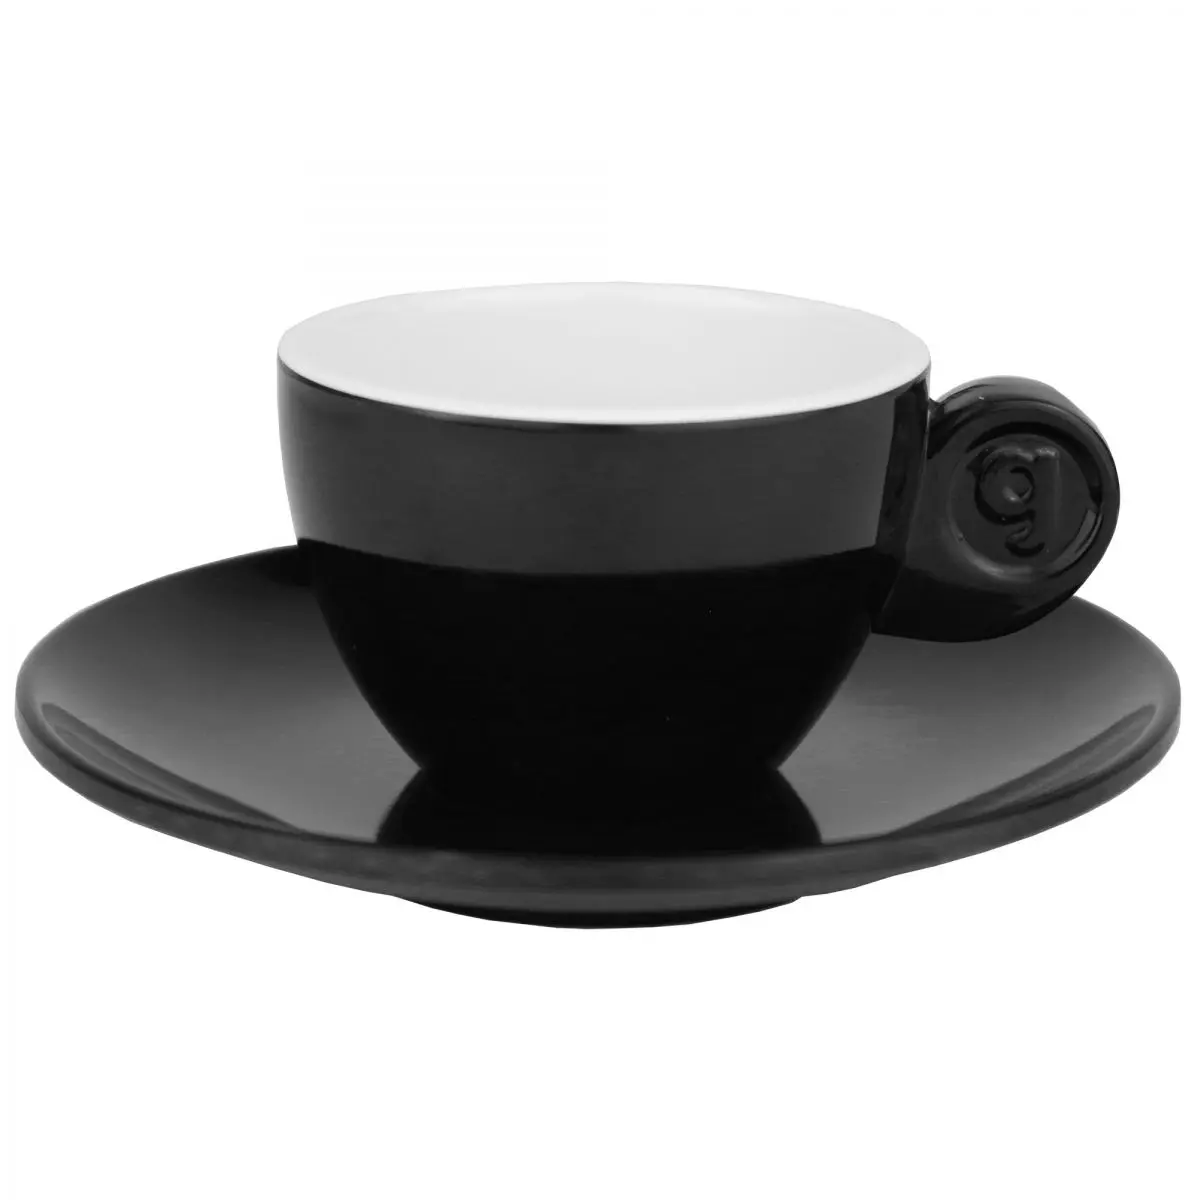 Čiernobiela séria riadu Quadrato - šálky na espresso, sada 2 ks